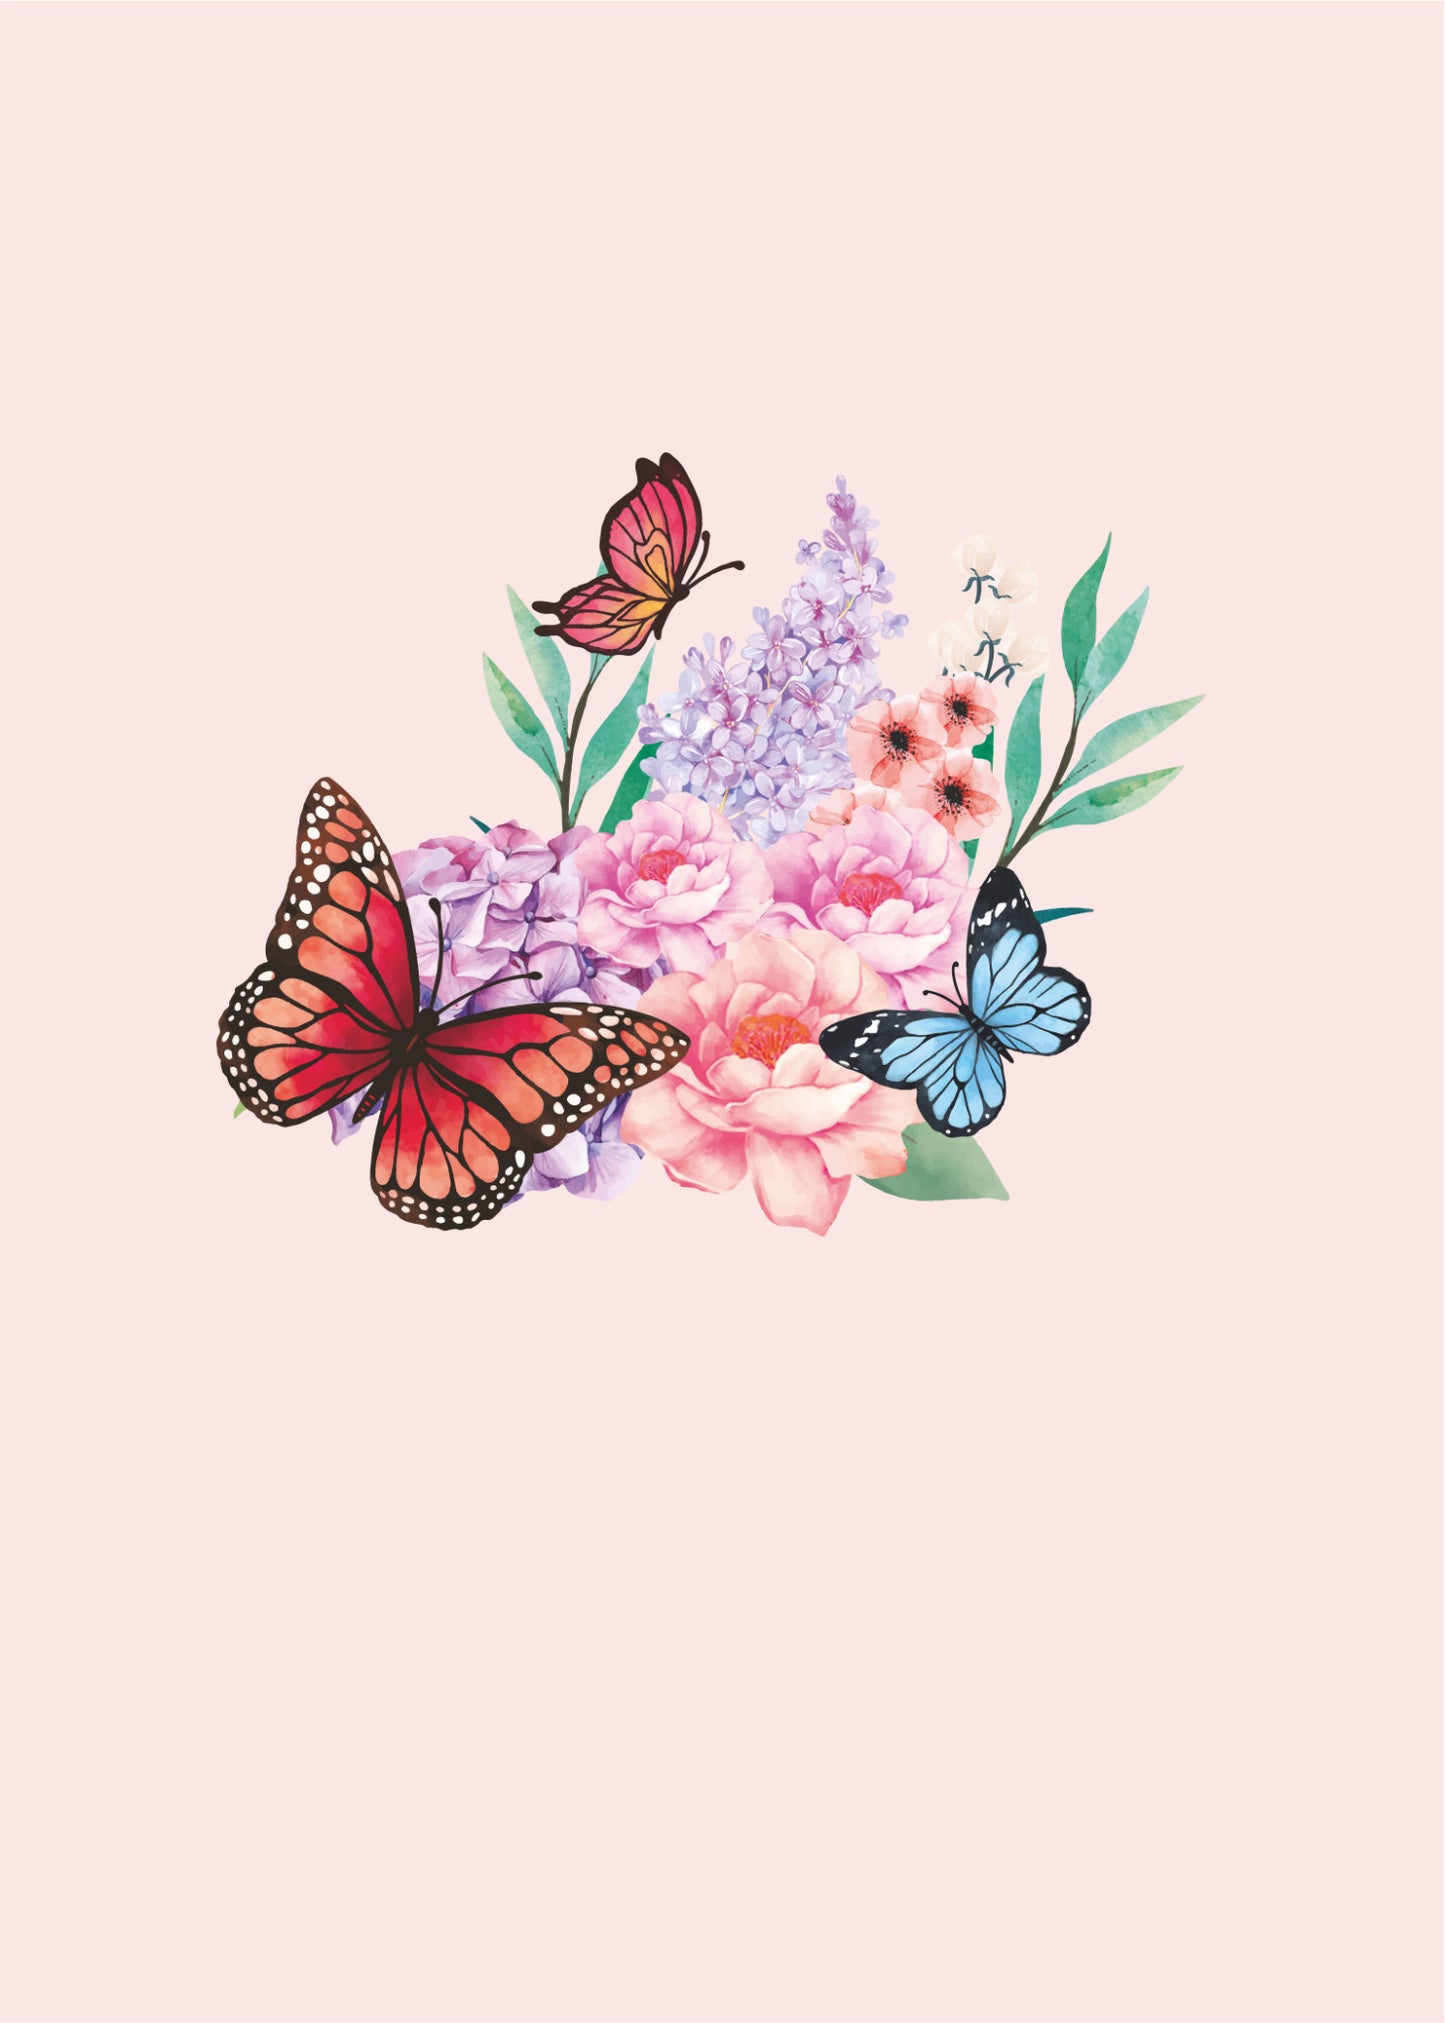 Butterfly Garden Pop-Up Card Pop-Up Card